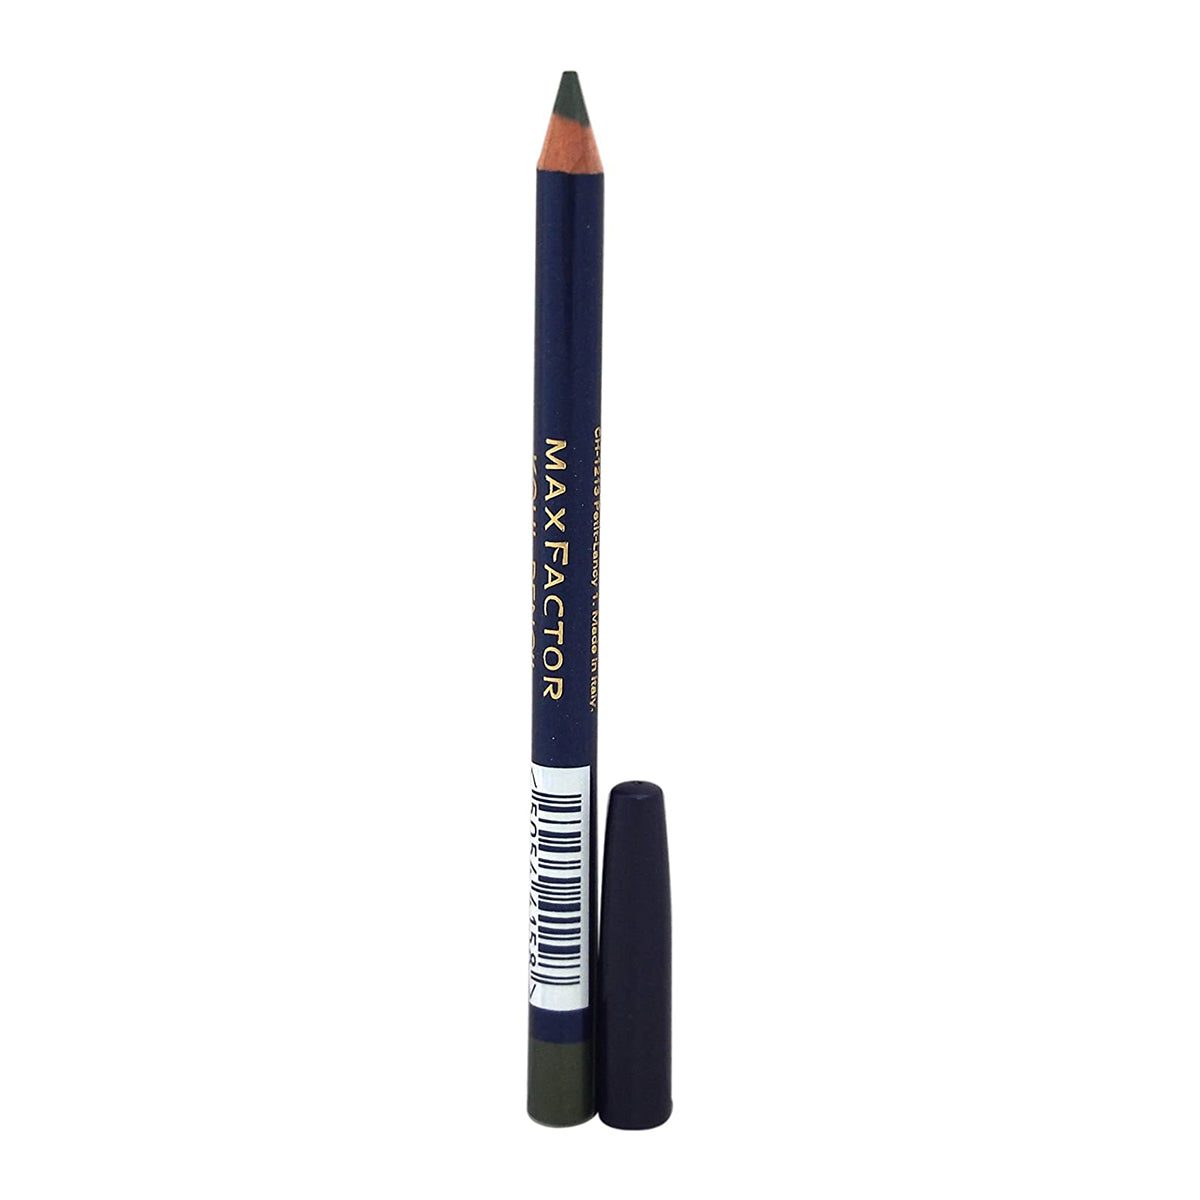 Max Factor Kohl Pencil, Eyeliner, 07 Olive, 4 G